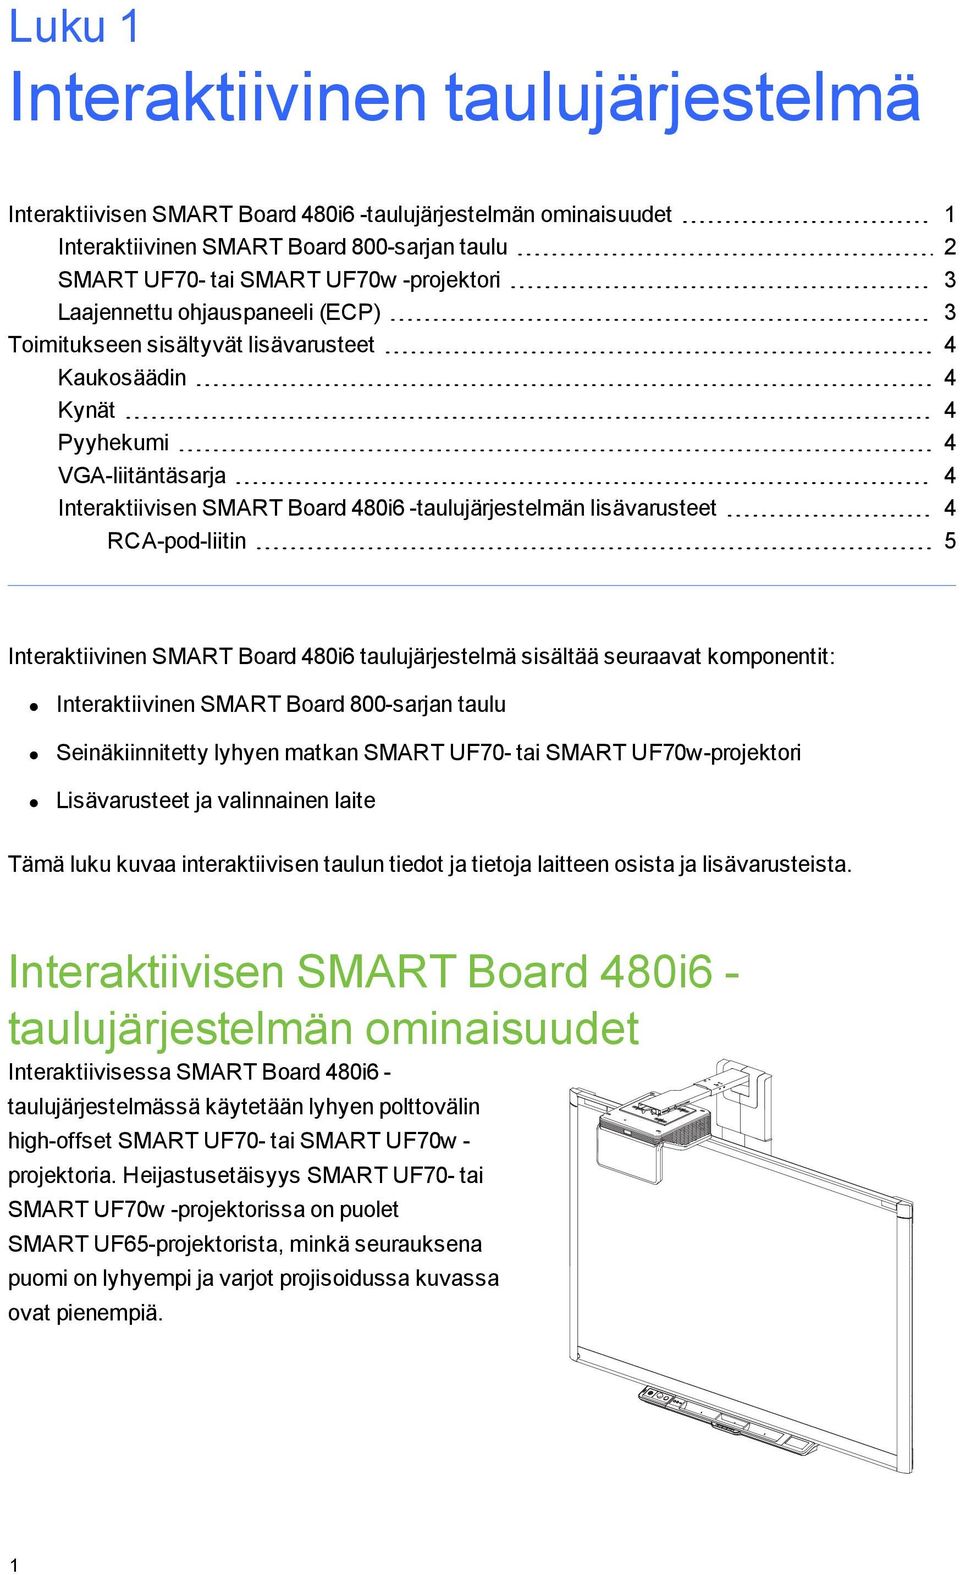 RCA-pod-liitin 5 Interaktiivinen SMART Board 480i6 taulujärjestelmä sisältää seuraavat komponentit: Interaktiivinen SMART Board 800-sarjan taulu Seinäkiinnitetty lyhyen matkan SMART UF70- tai SMART